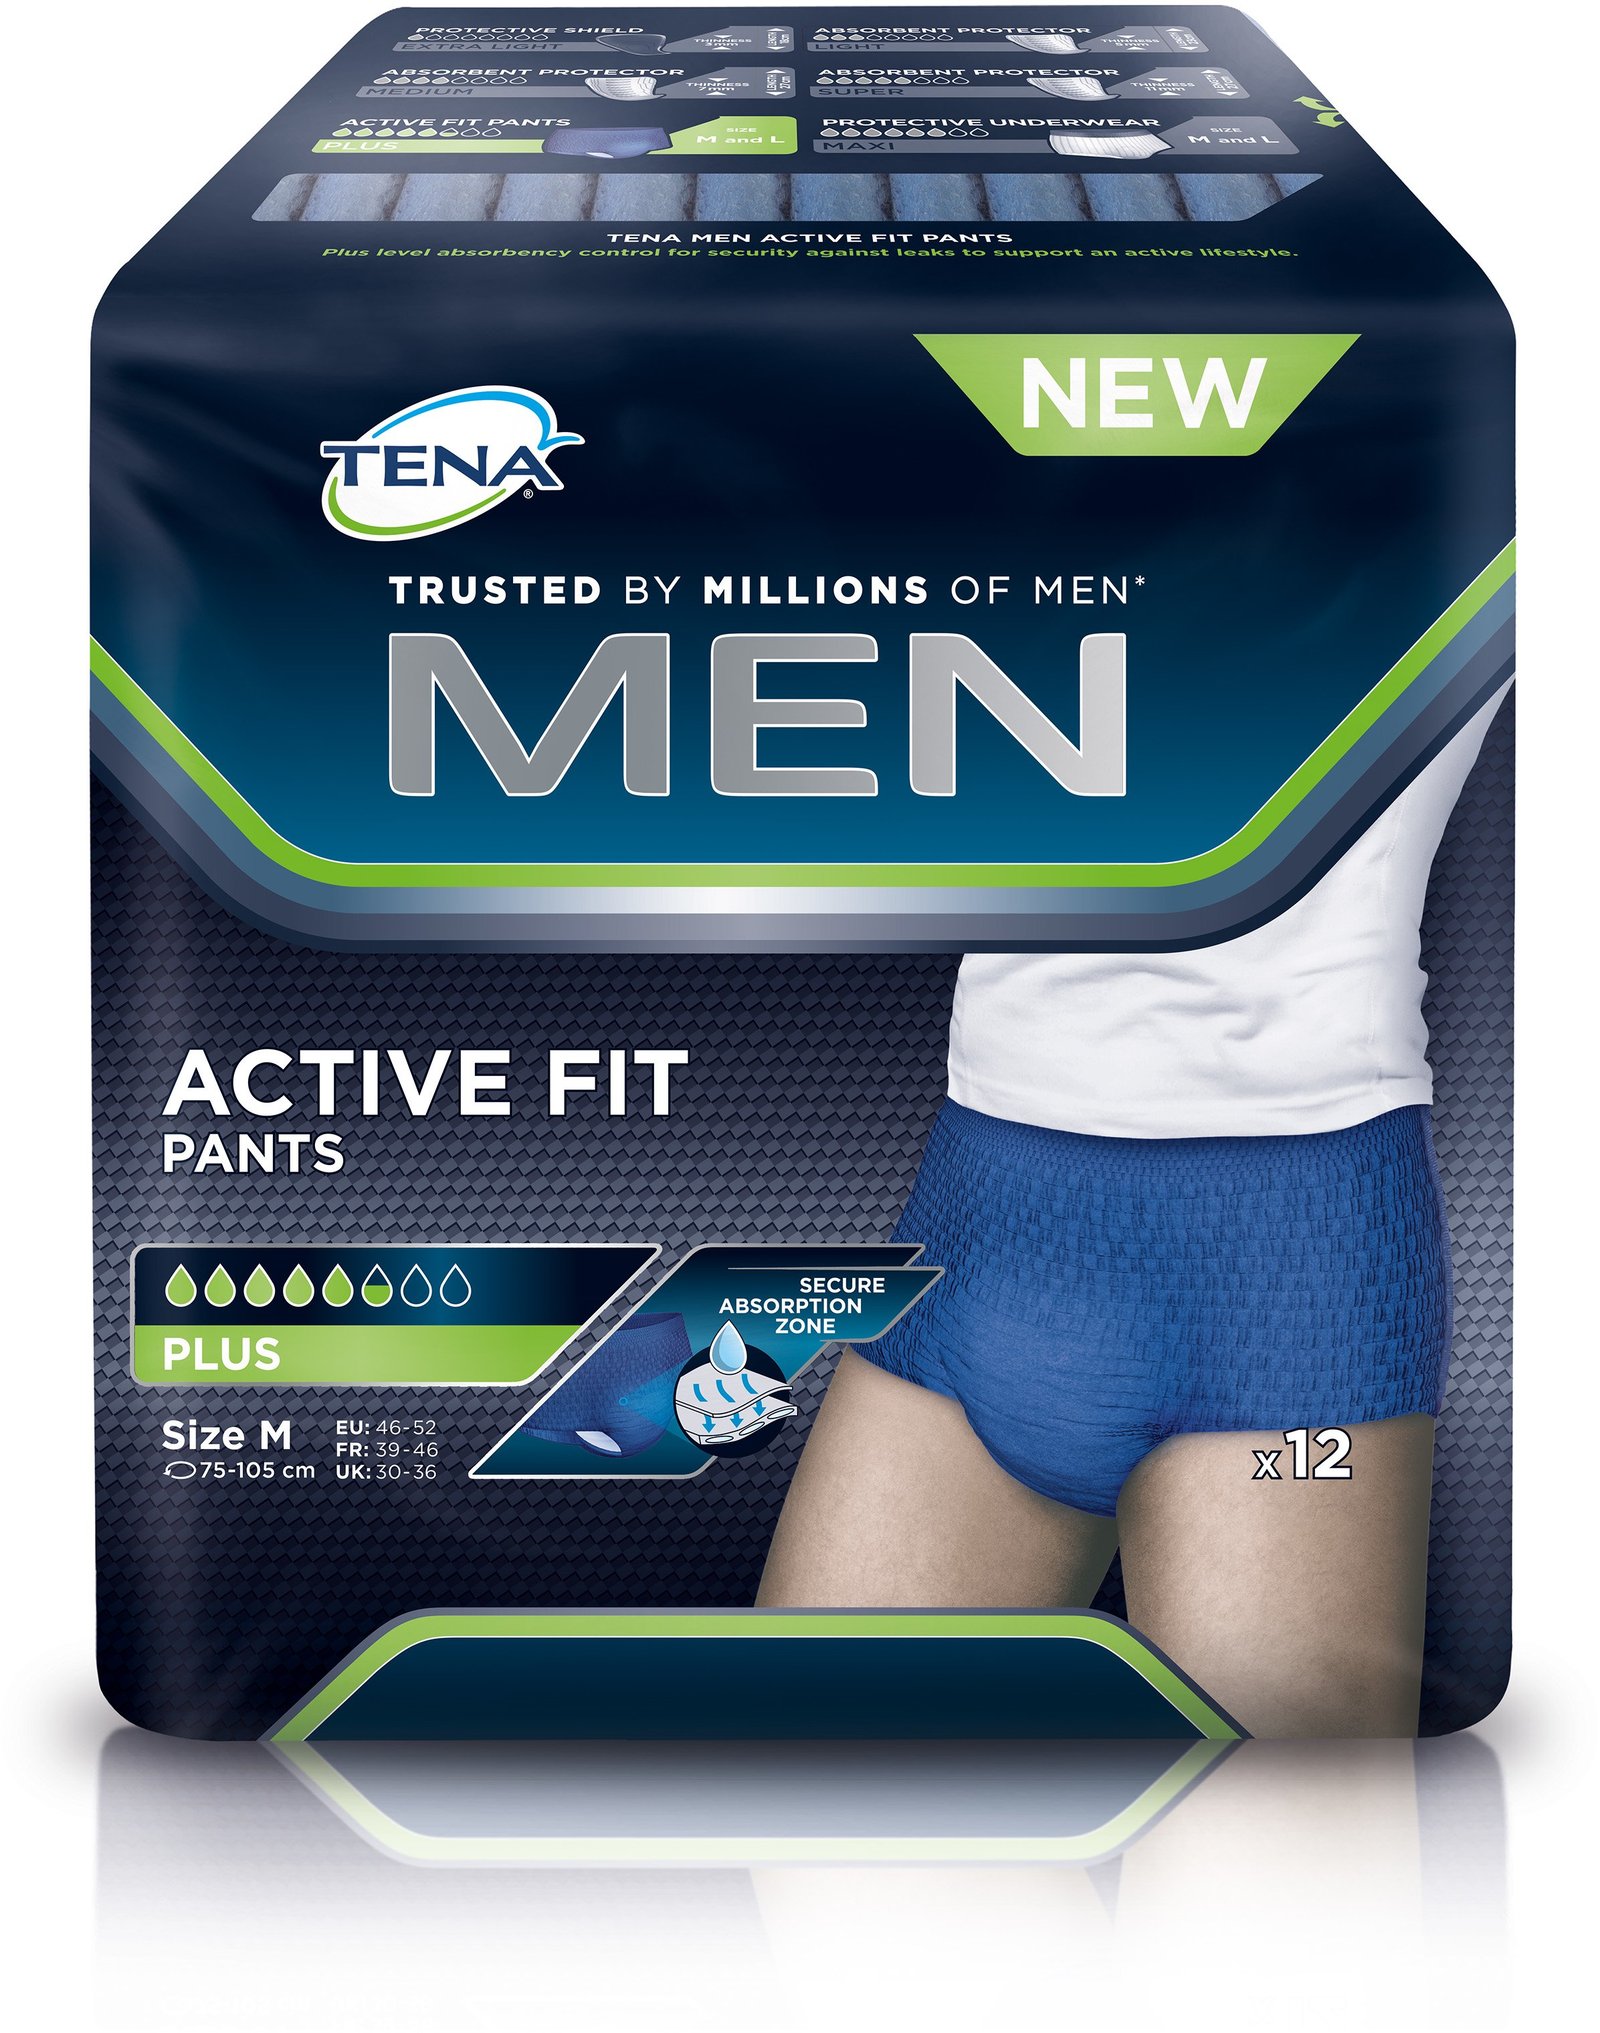 TENA Men active fit inkontinenskalsong medium 12 st